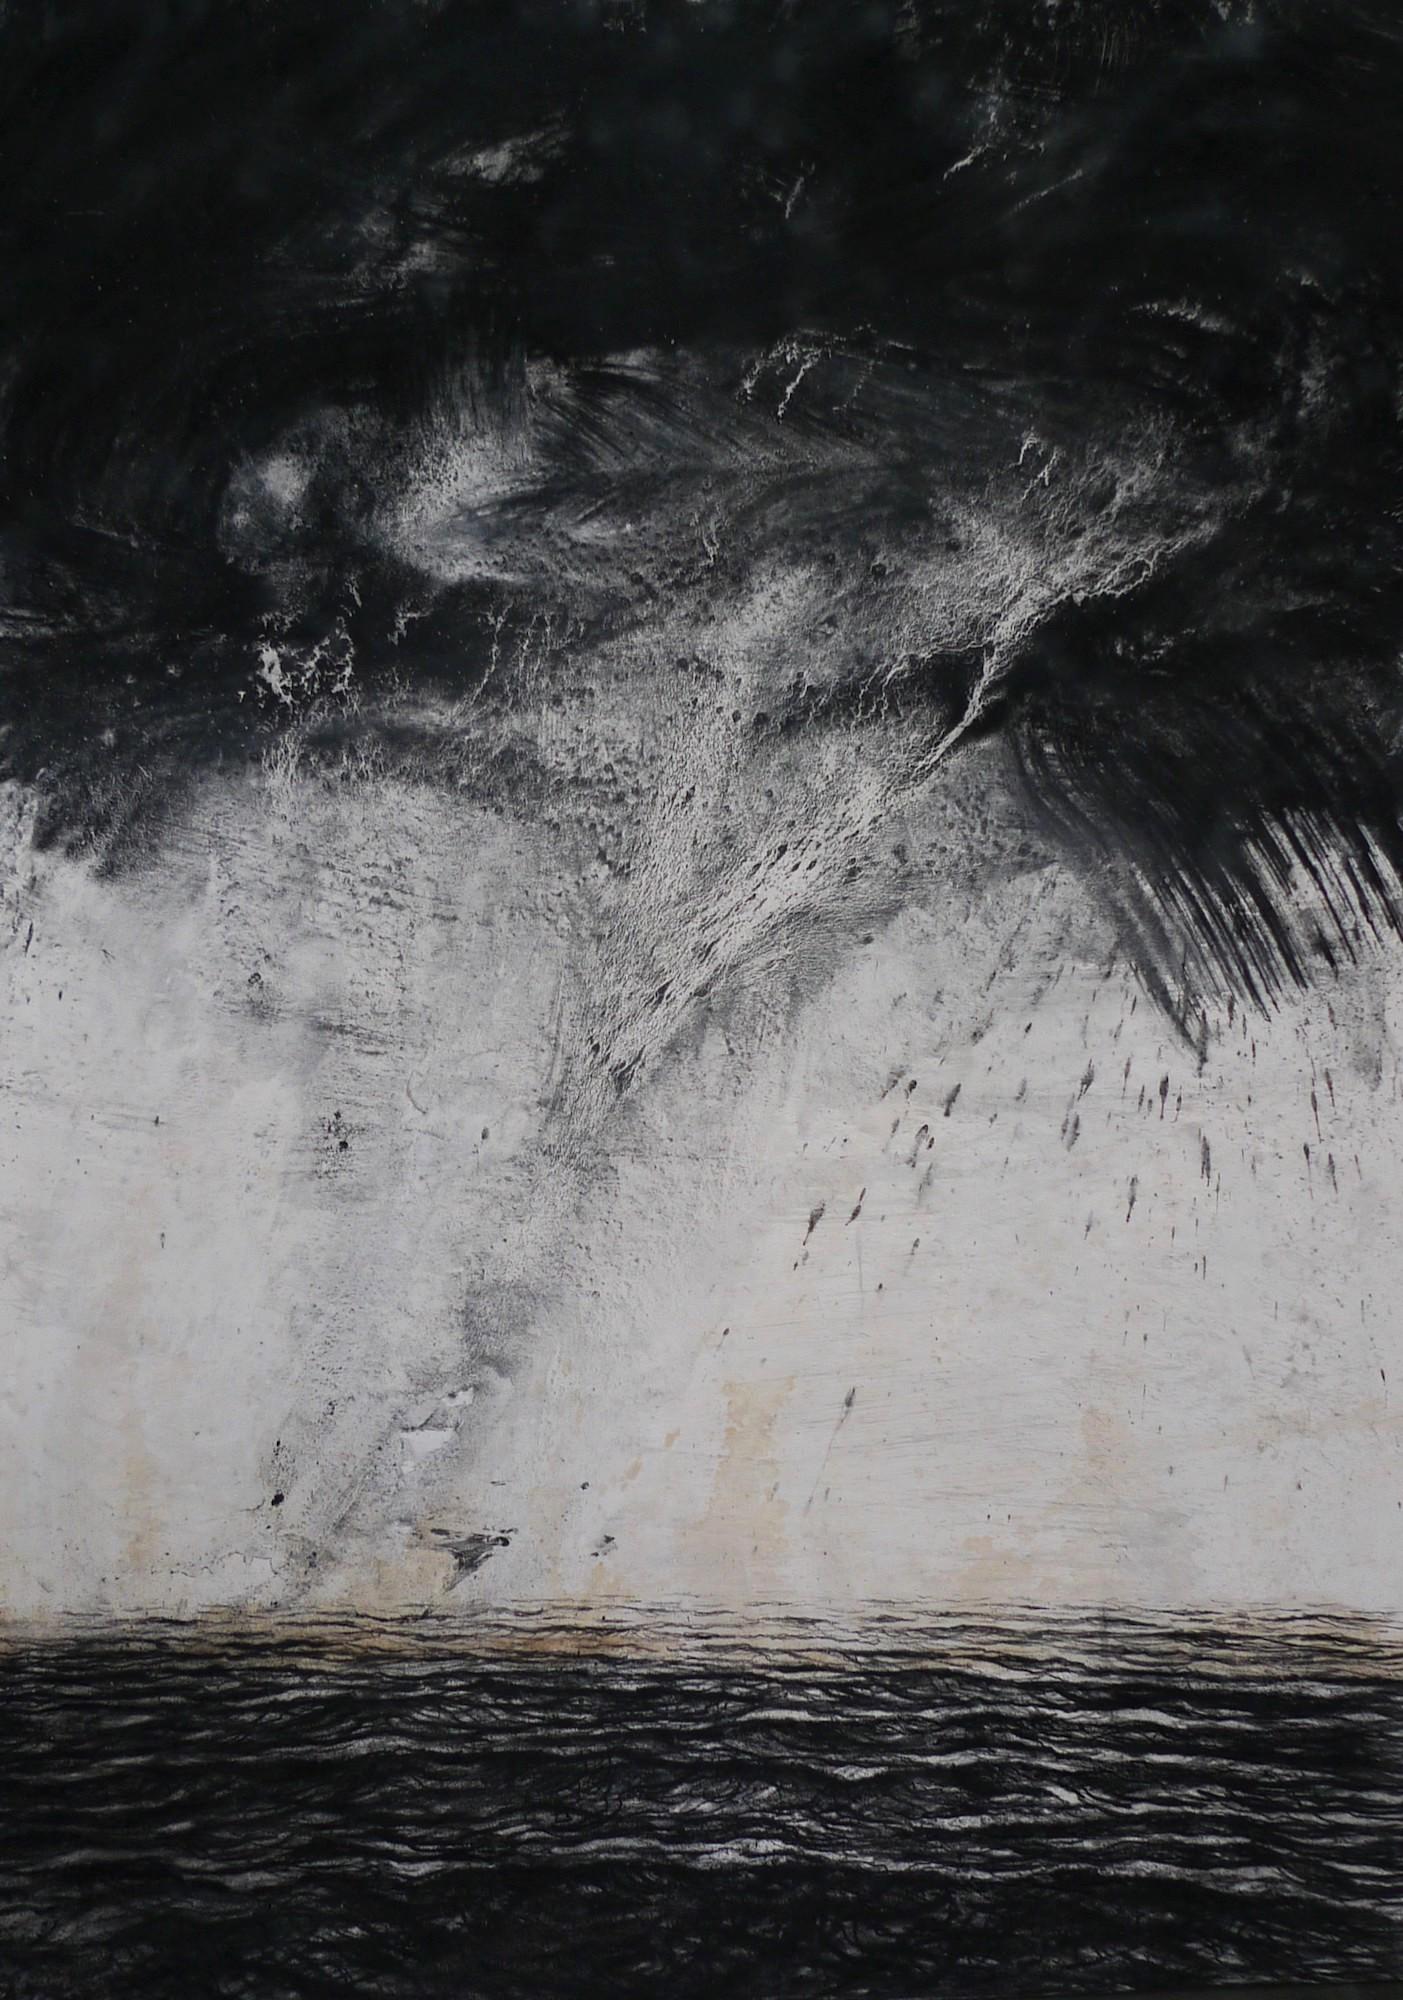 Cyclone von Franco Salas Borquez – Schwarz-Weiß-Gemälde, Meereswellen, Meereslandschaft